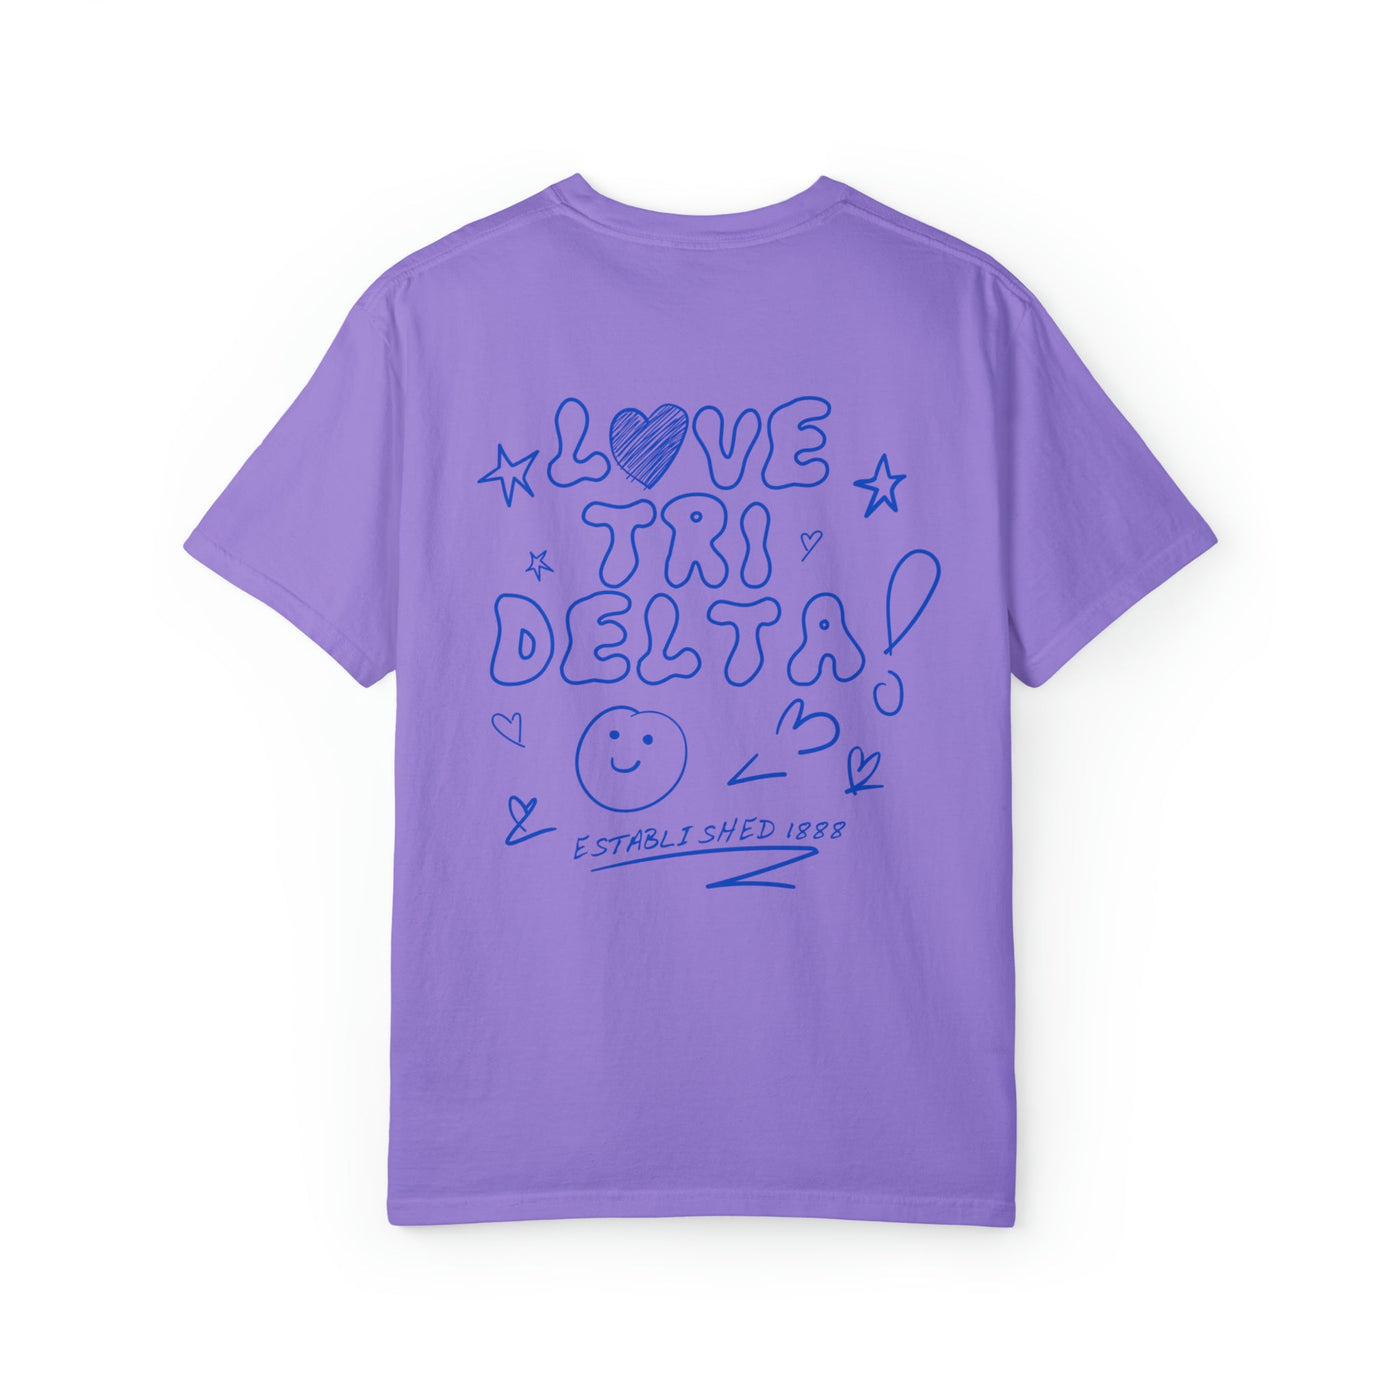 Delta Delta Delta Love Doodle Sorority T-shirt